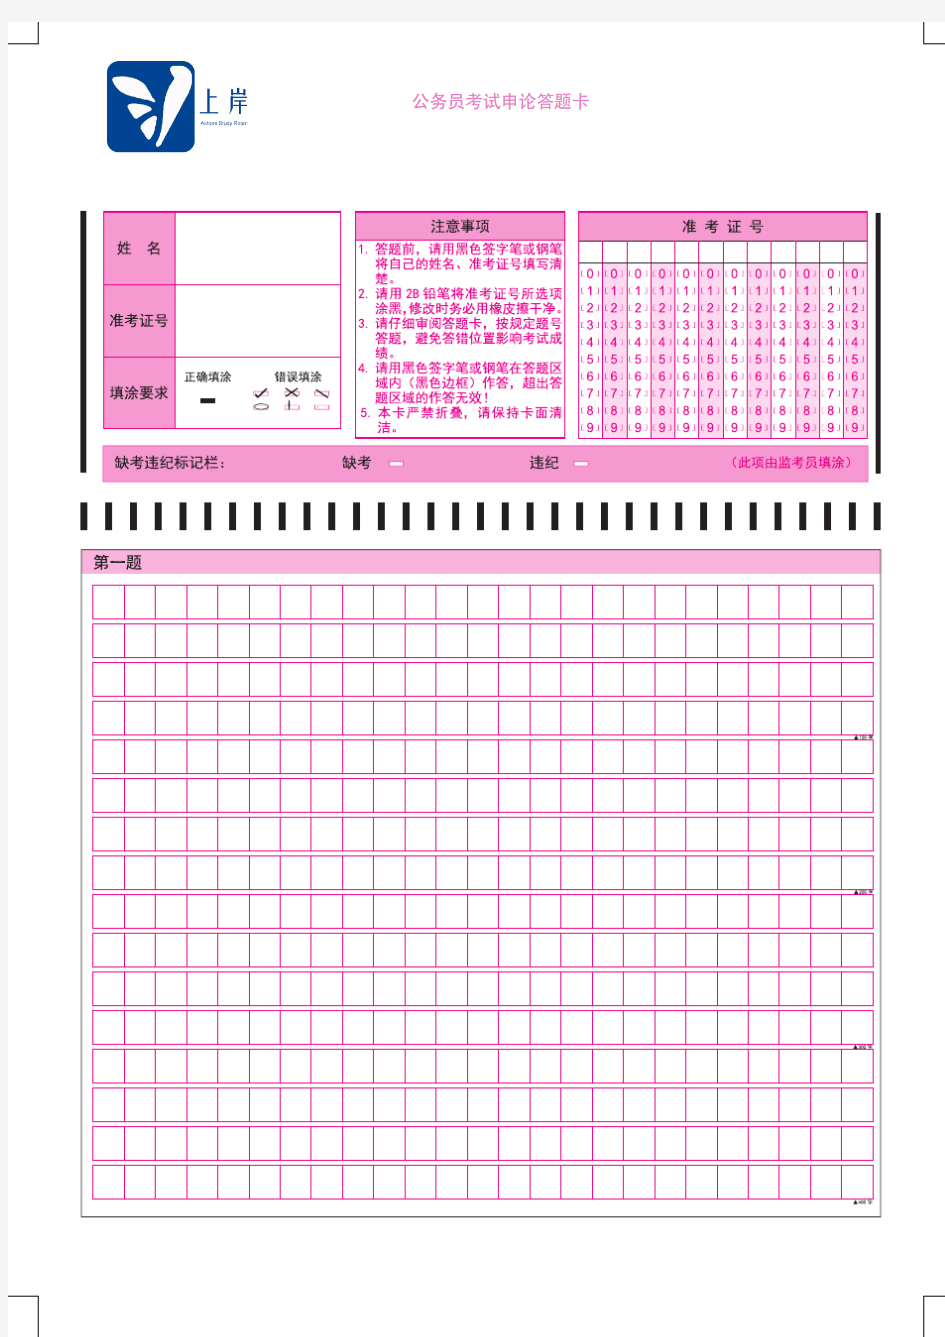 上海公务员考试答题纸